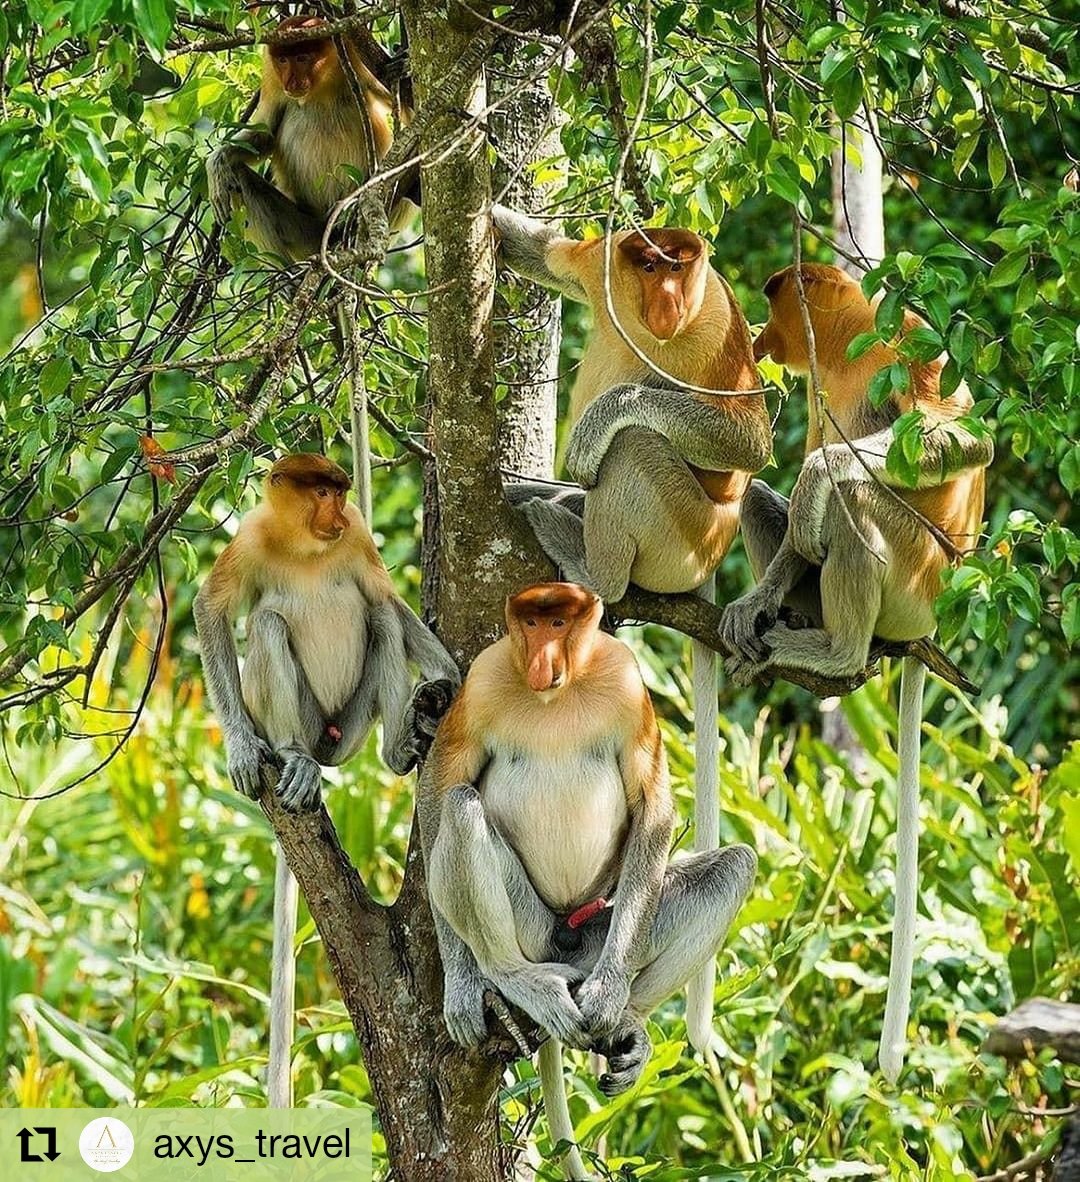 サバ州政府観光局 テングザル のオスたち大集合 マレーシア サバ州 ボルネオ島 動物好き Malaysia Sabah Borneo